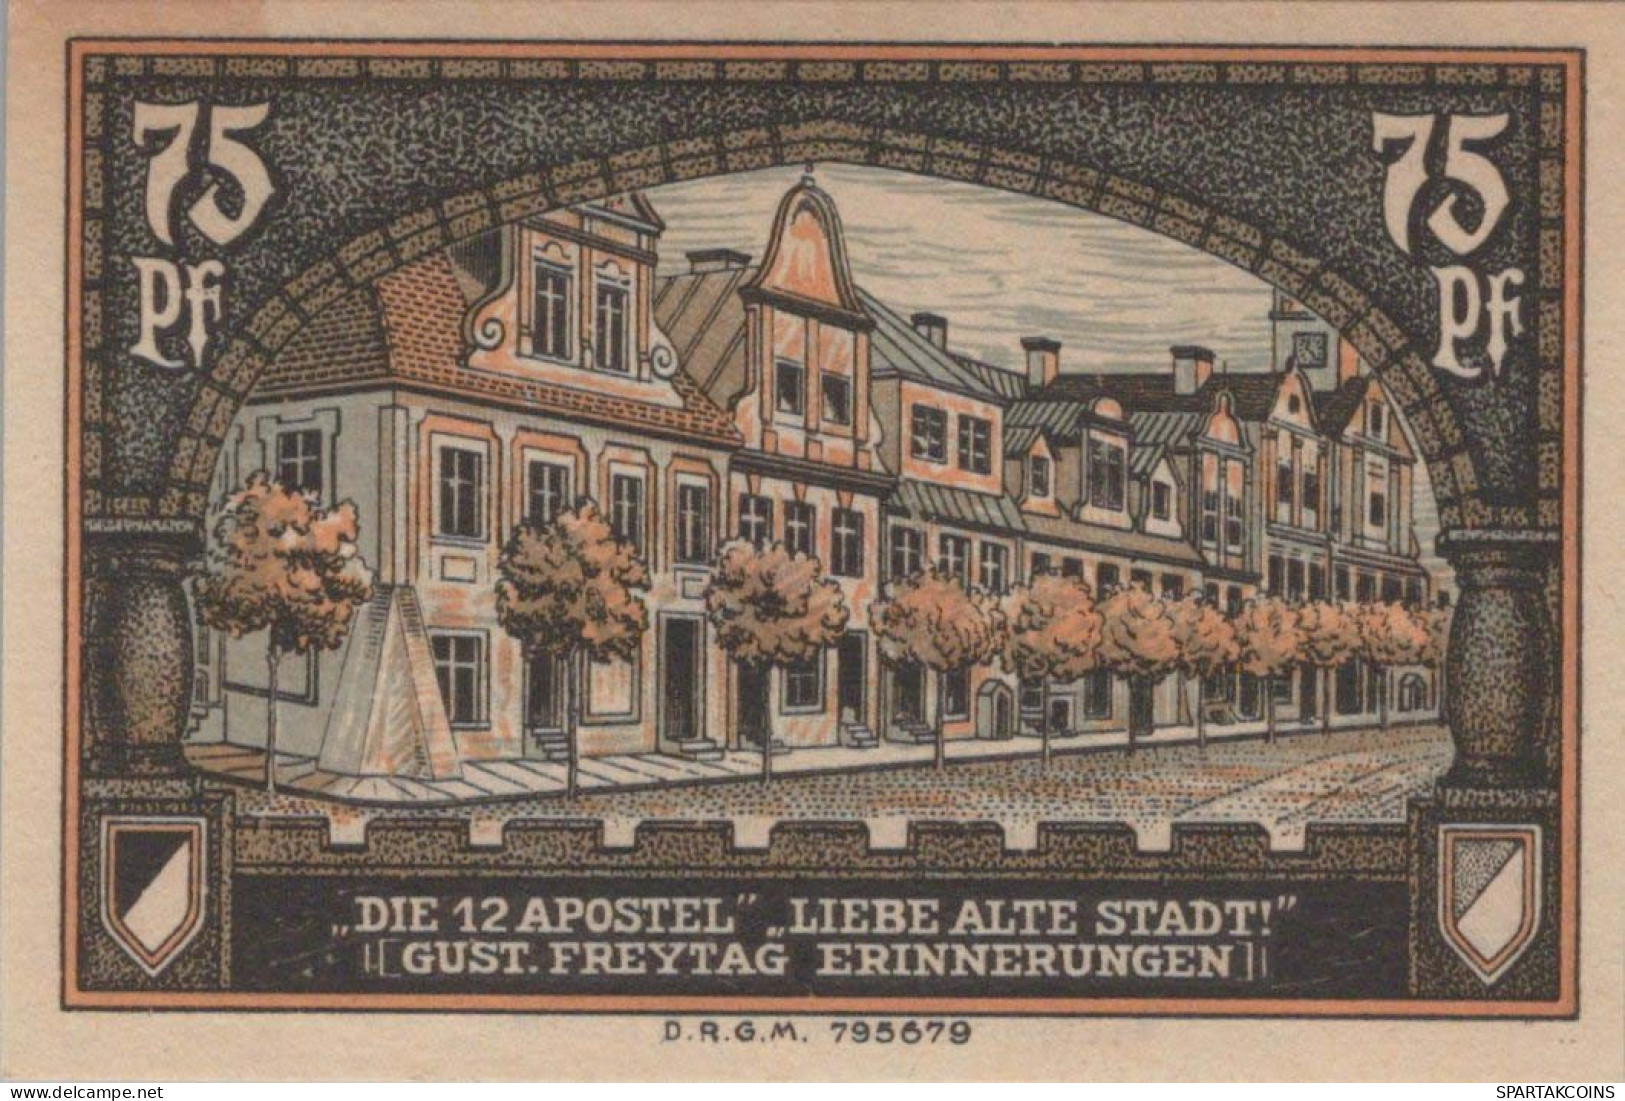 75 PFENNIG 1921 Stadt KREUZBURG Oberen Silesia DEUTSCHLAND Notgeld #PF855 - [11] Local Banknote Issues